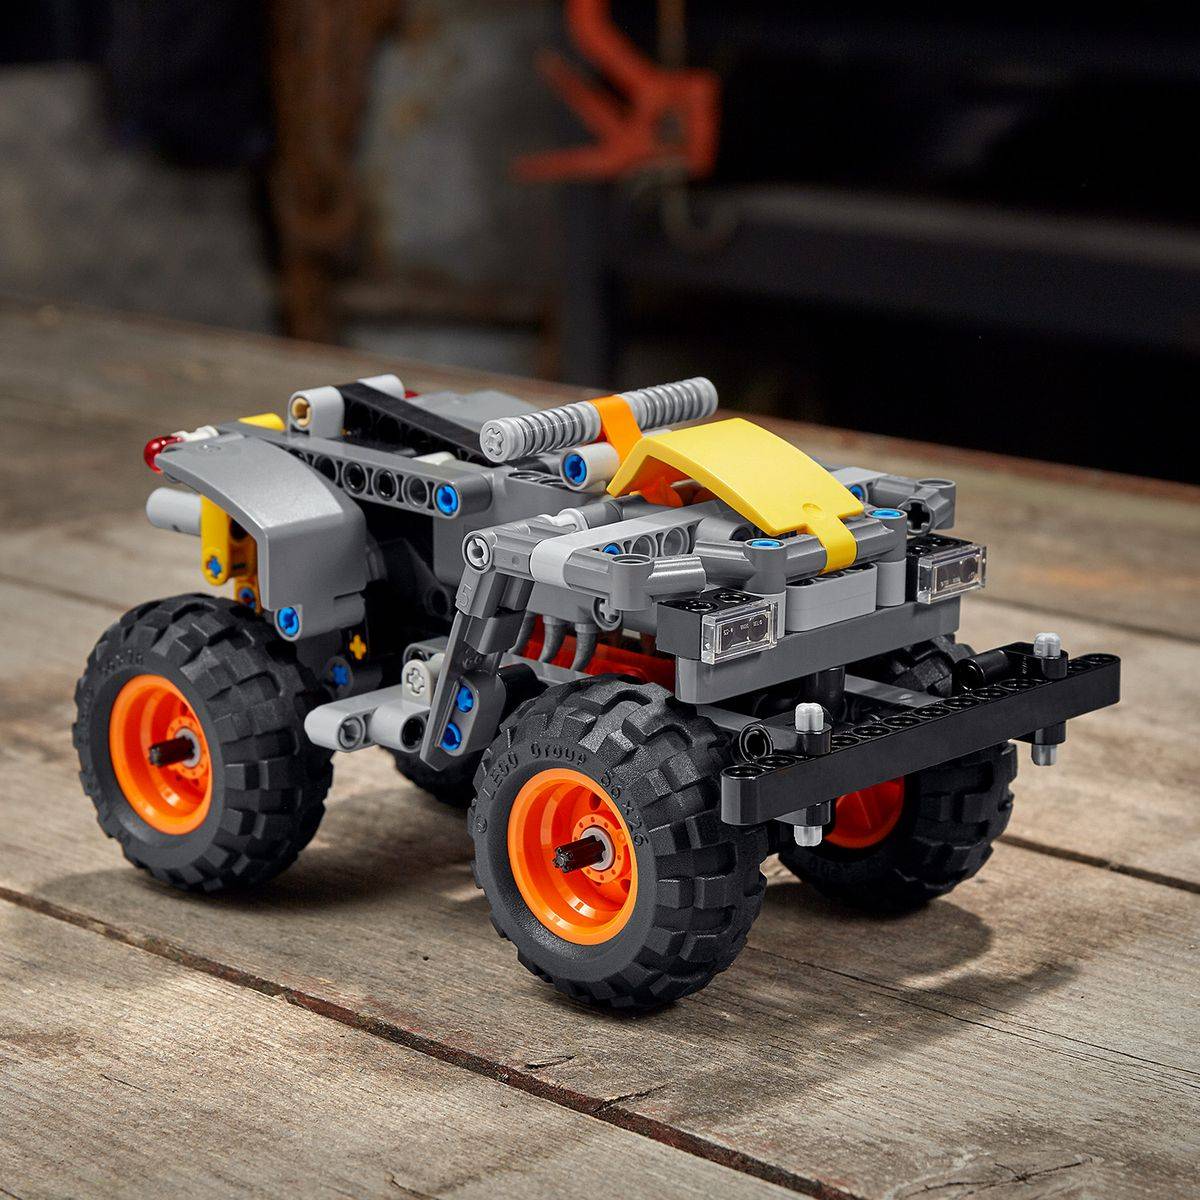 LEGO Technic Monster Jam Max-D model 42119